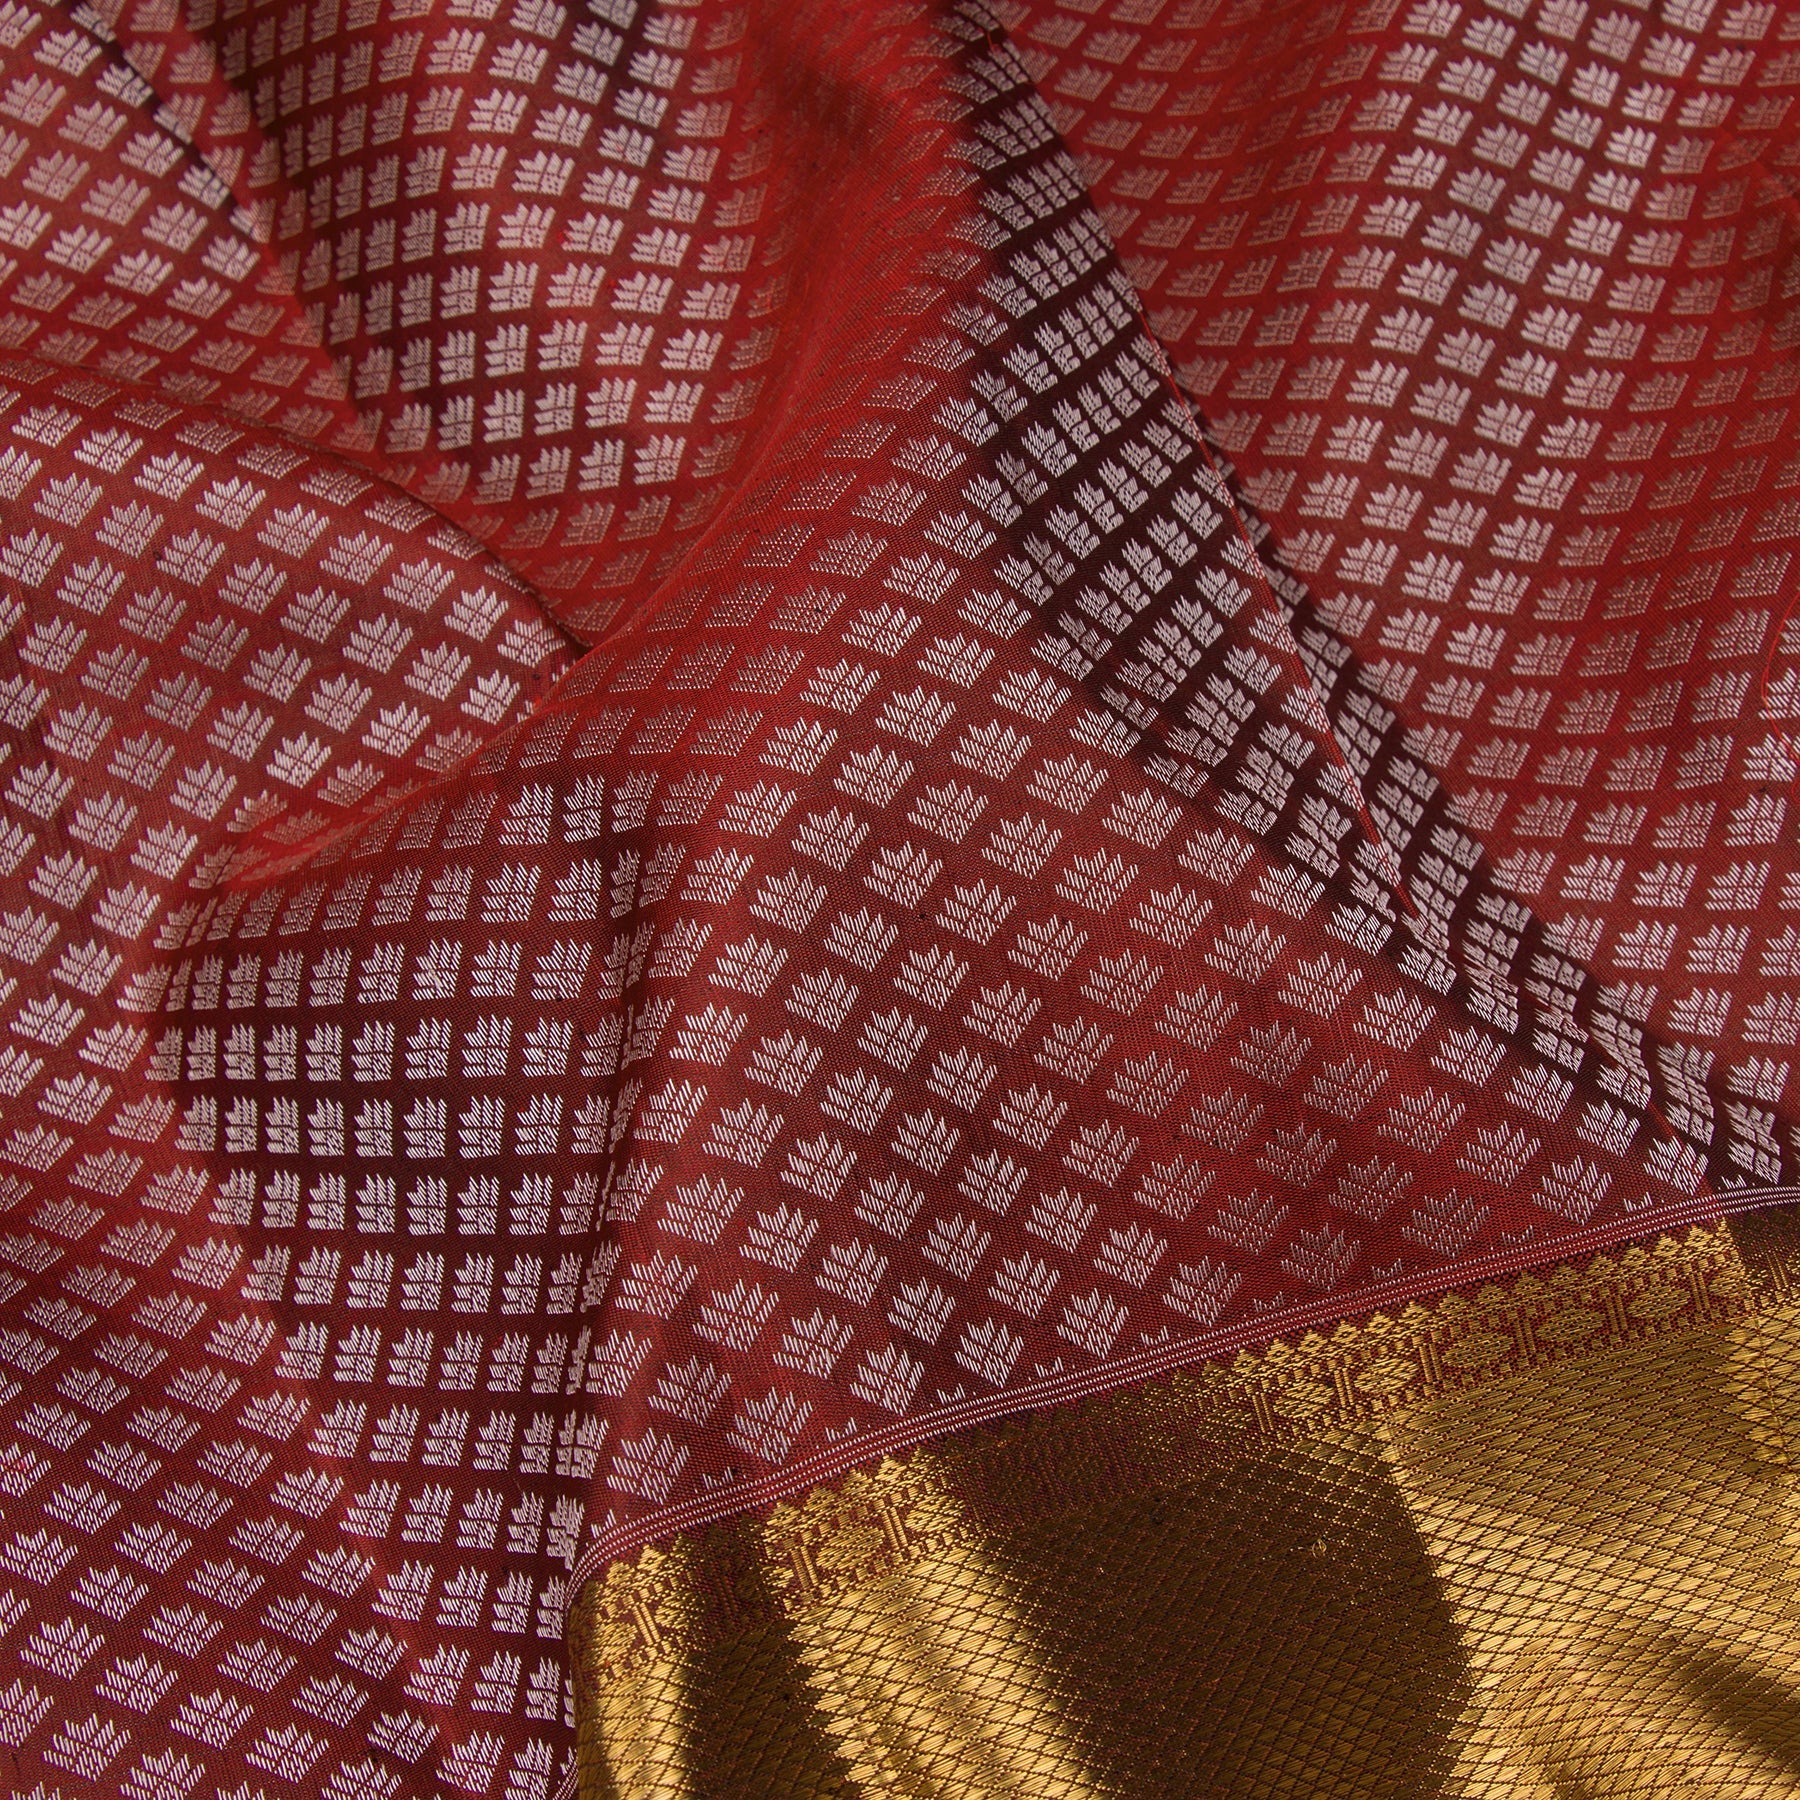 Kanakavalli Kanjivaram Silk Sari 23-599-HS001-05992 - Fabric View